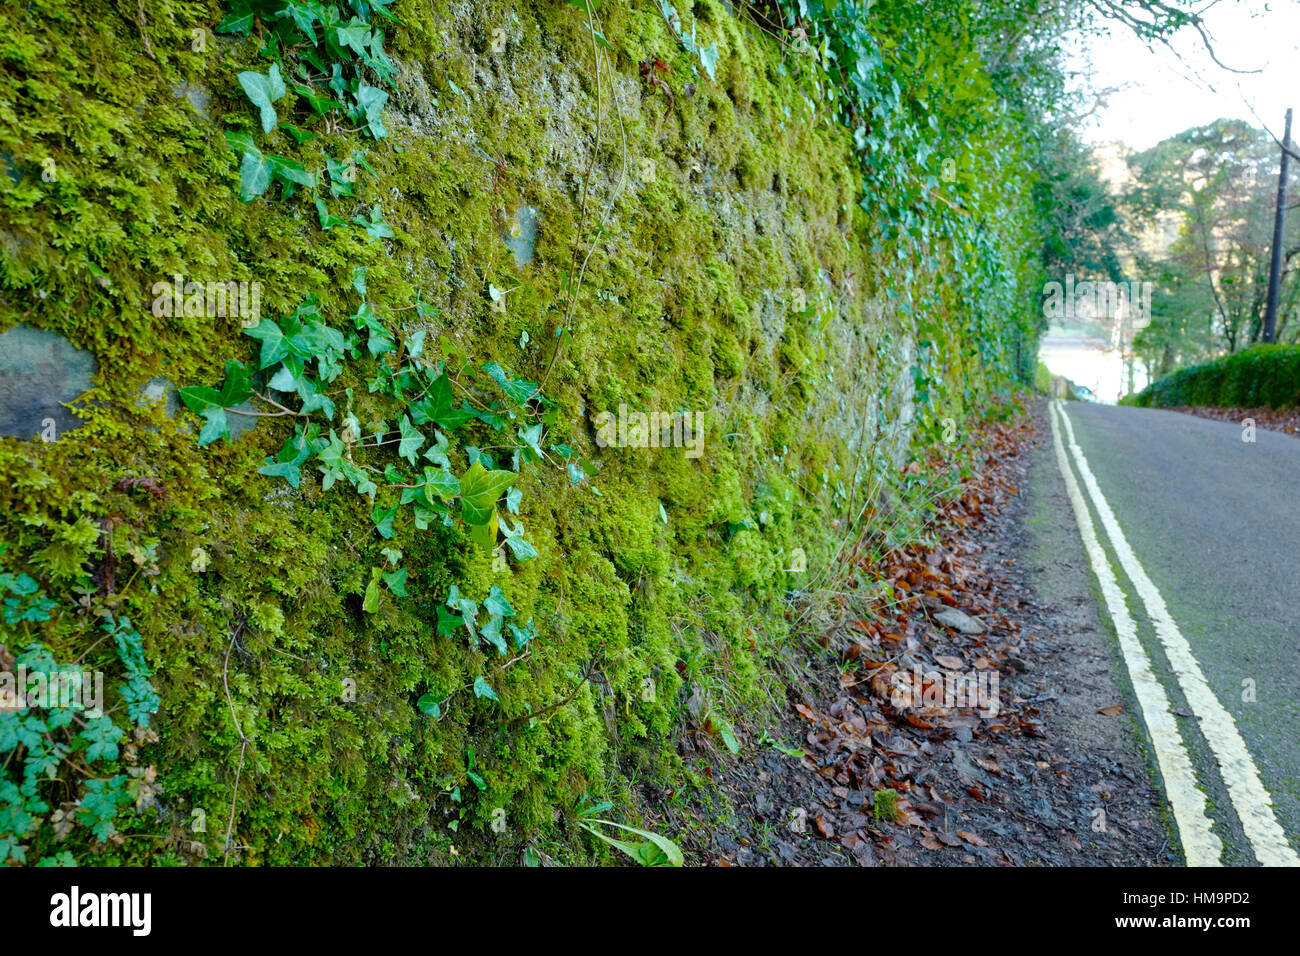 Mousses, lichens et de lierre poussant sur un mur dans une ruelle, UK Banque D'Images